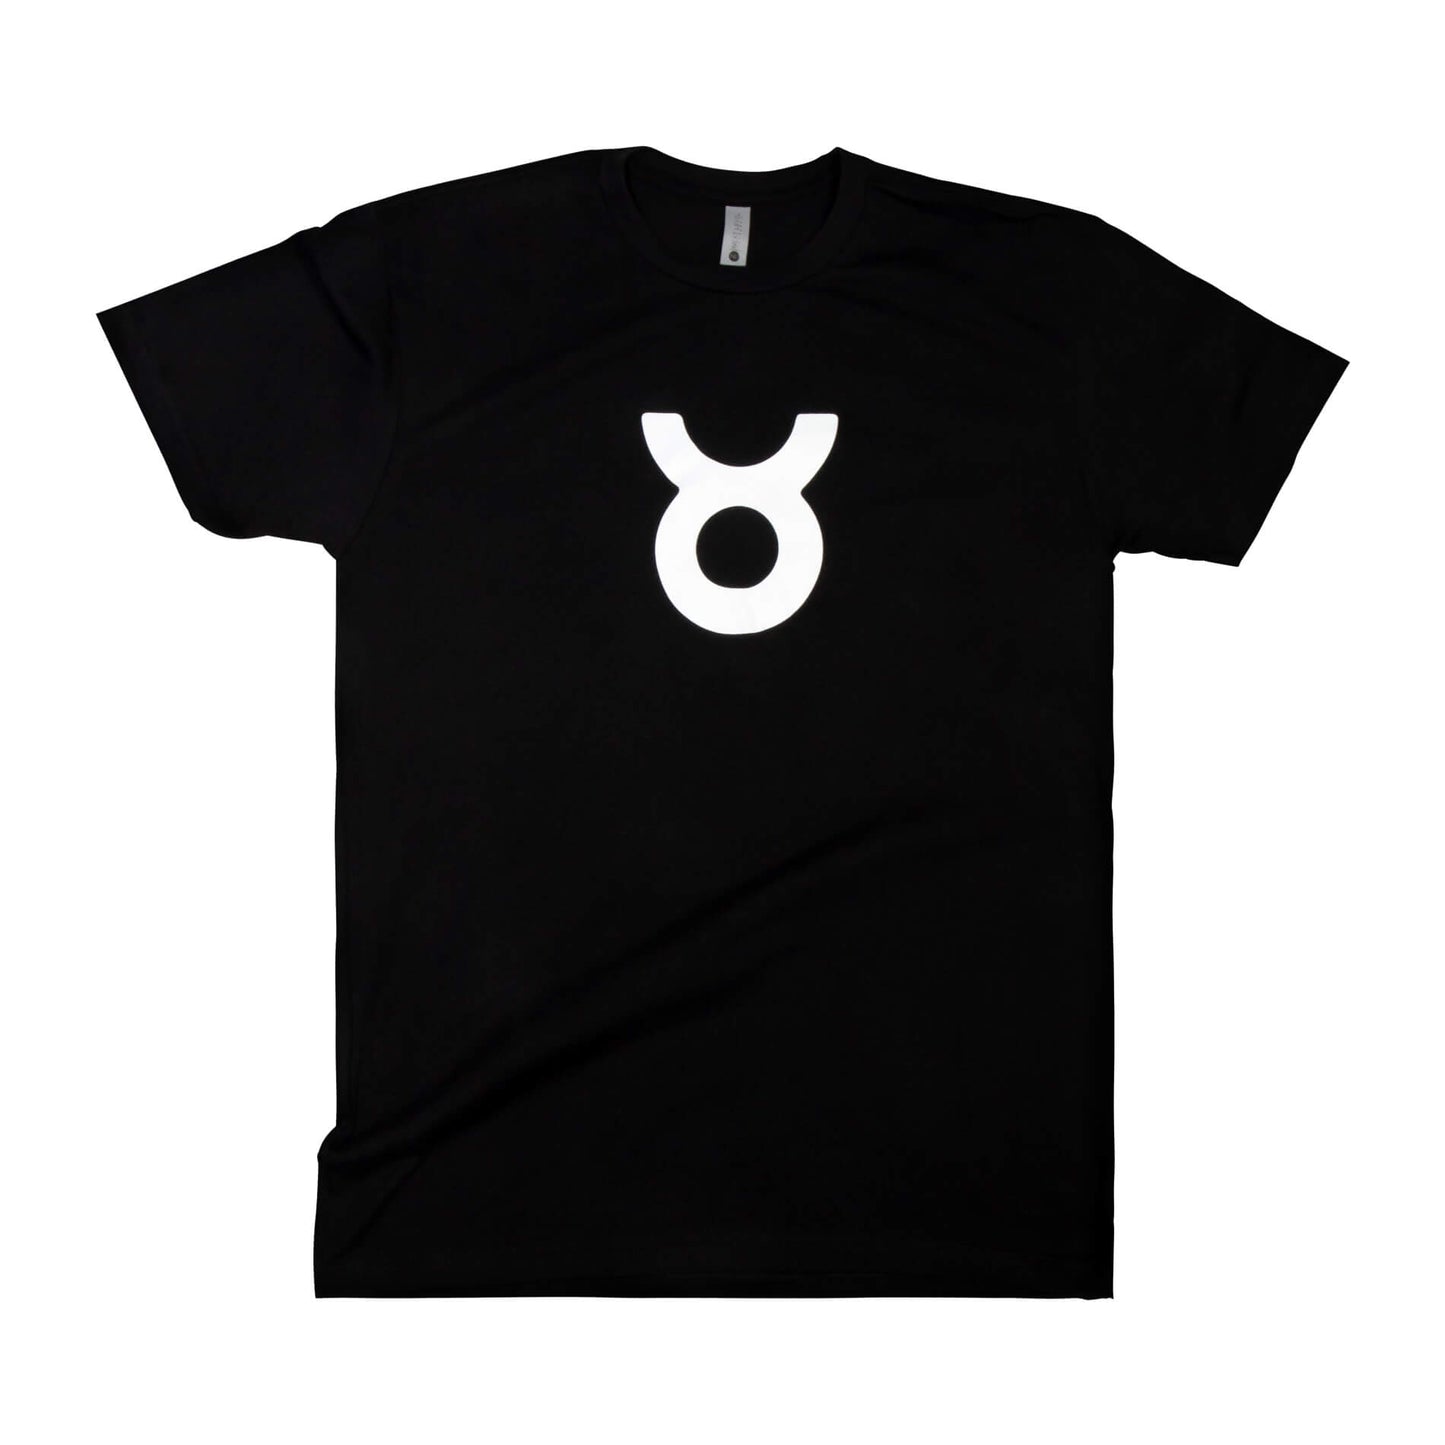 Taurus Team T-shirt - Black